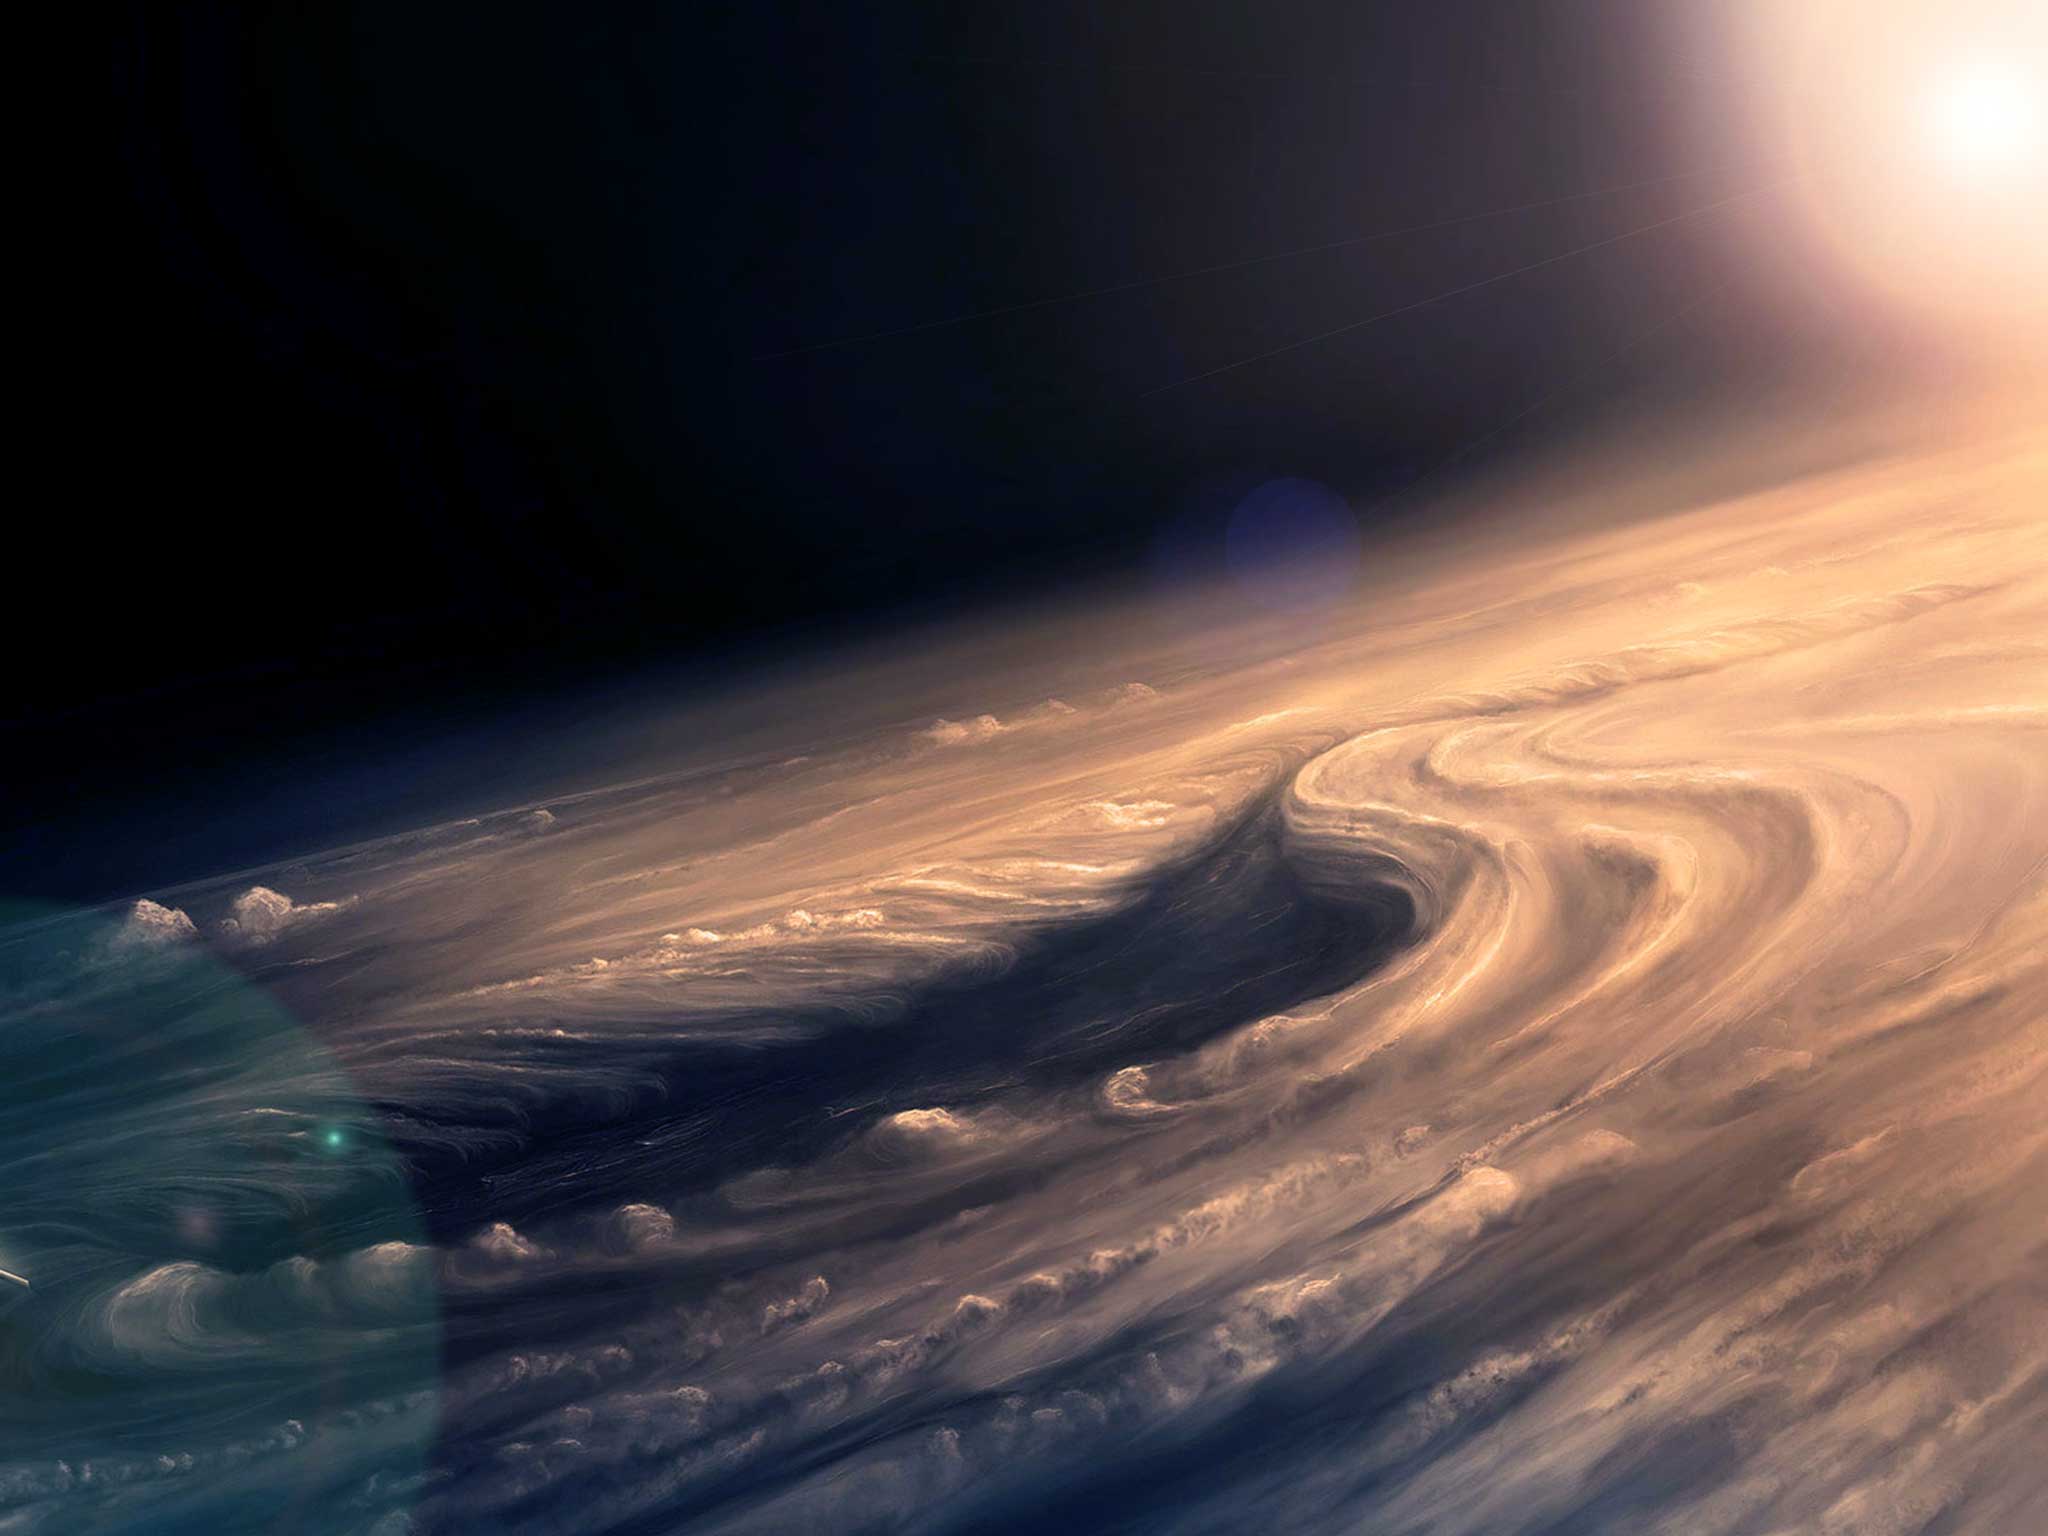 西马克,美国著名科幻小说作家)中描述了一个神奇的木星大气层生物世界